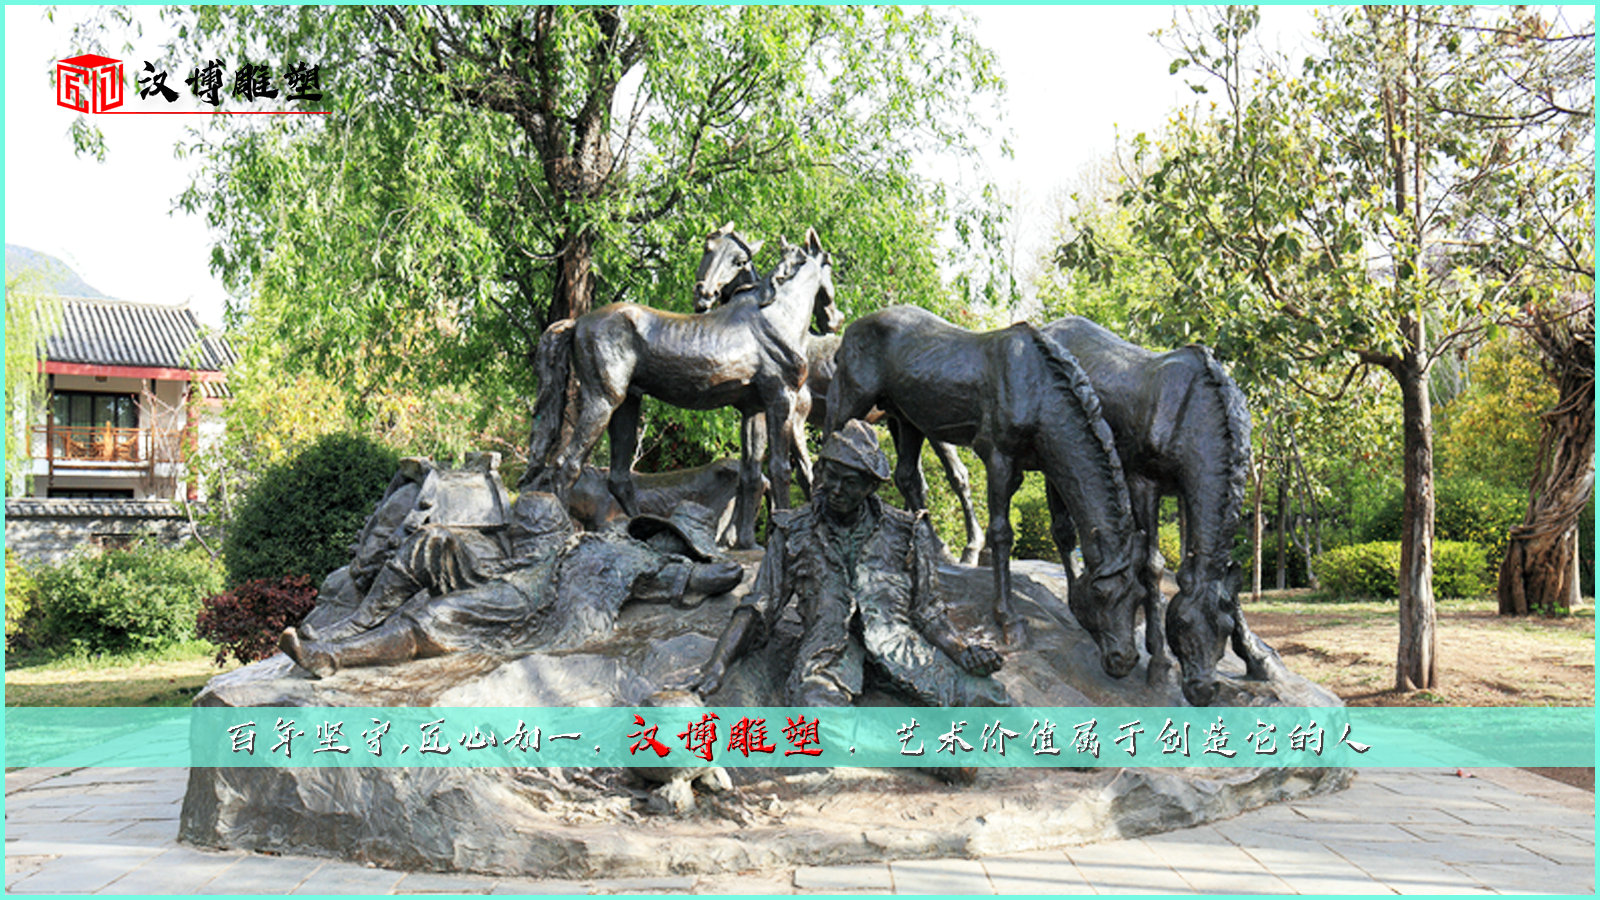 茶马古道雕塑,茶农马帮人物雕像,公园广场景观铜雕